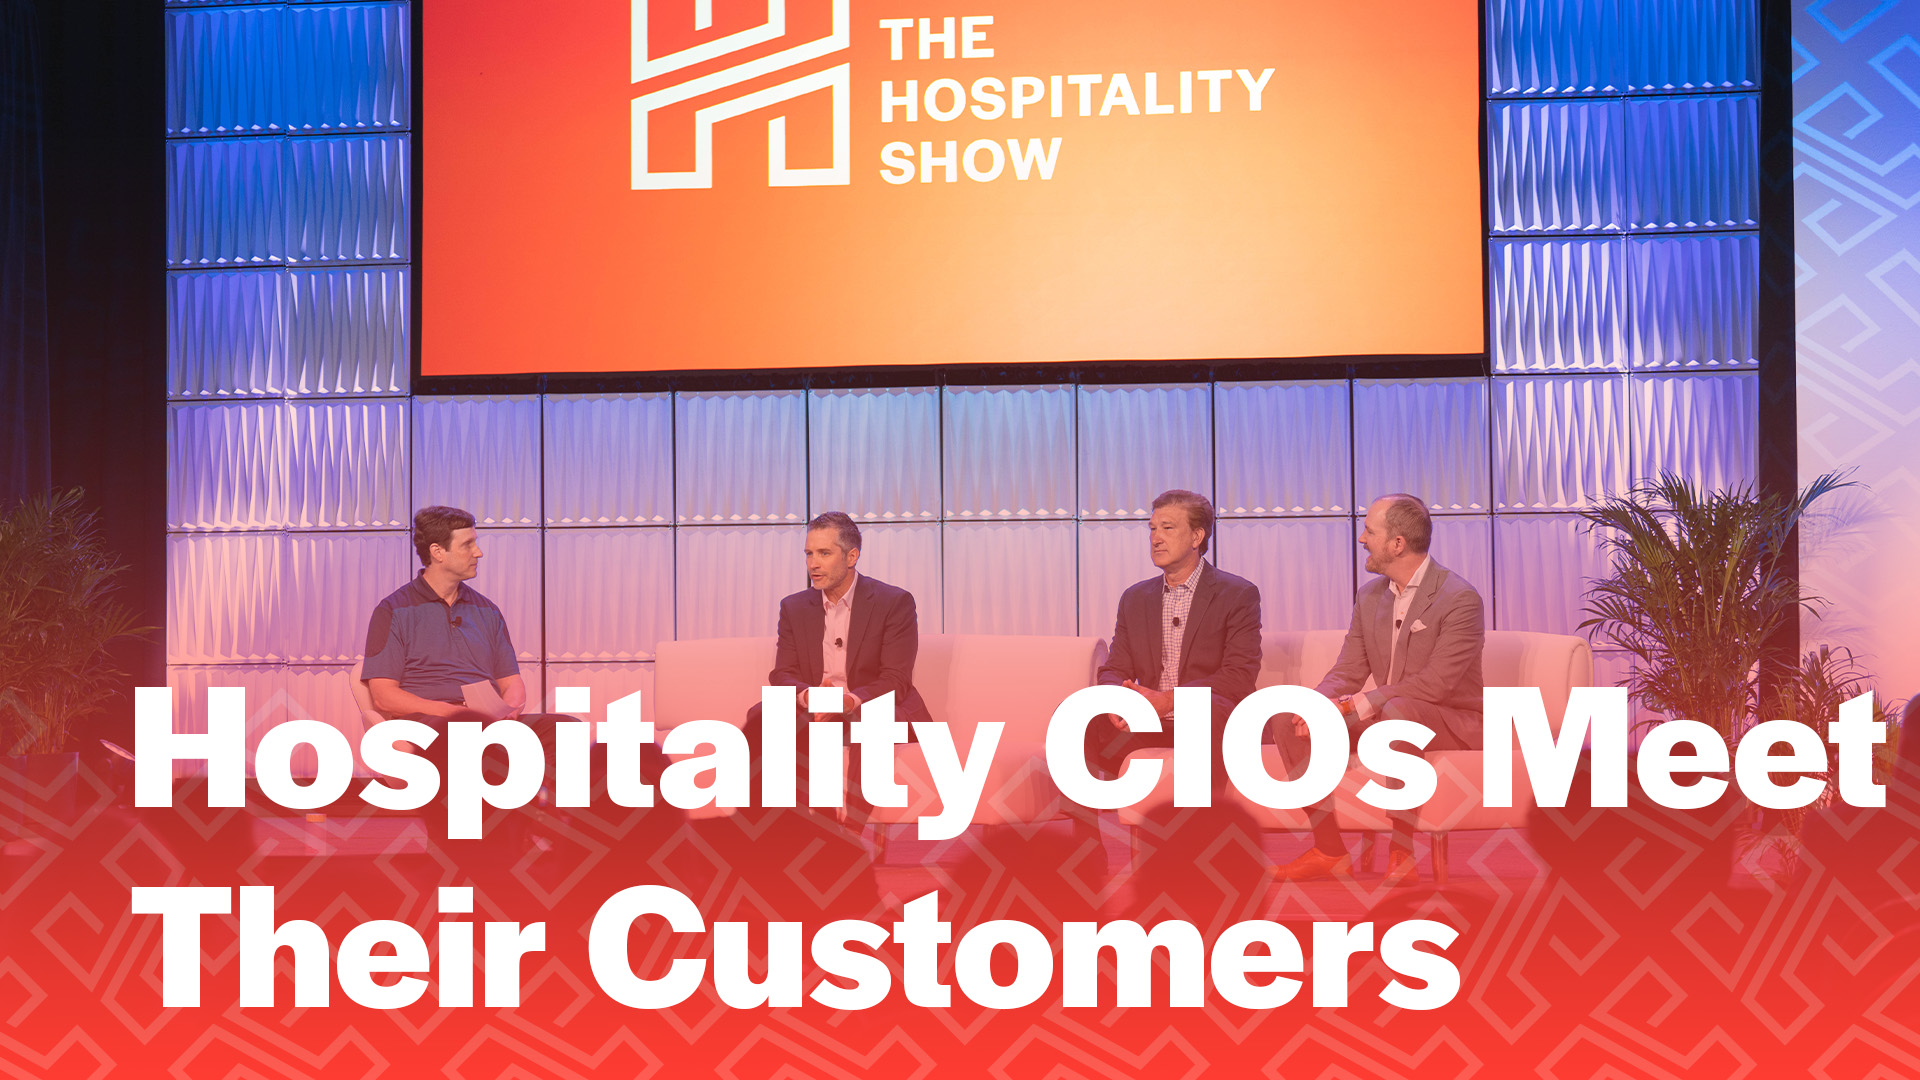 The Hospitality Show Hospitality CIOs Meet their Customers